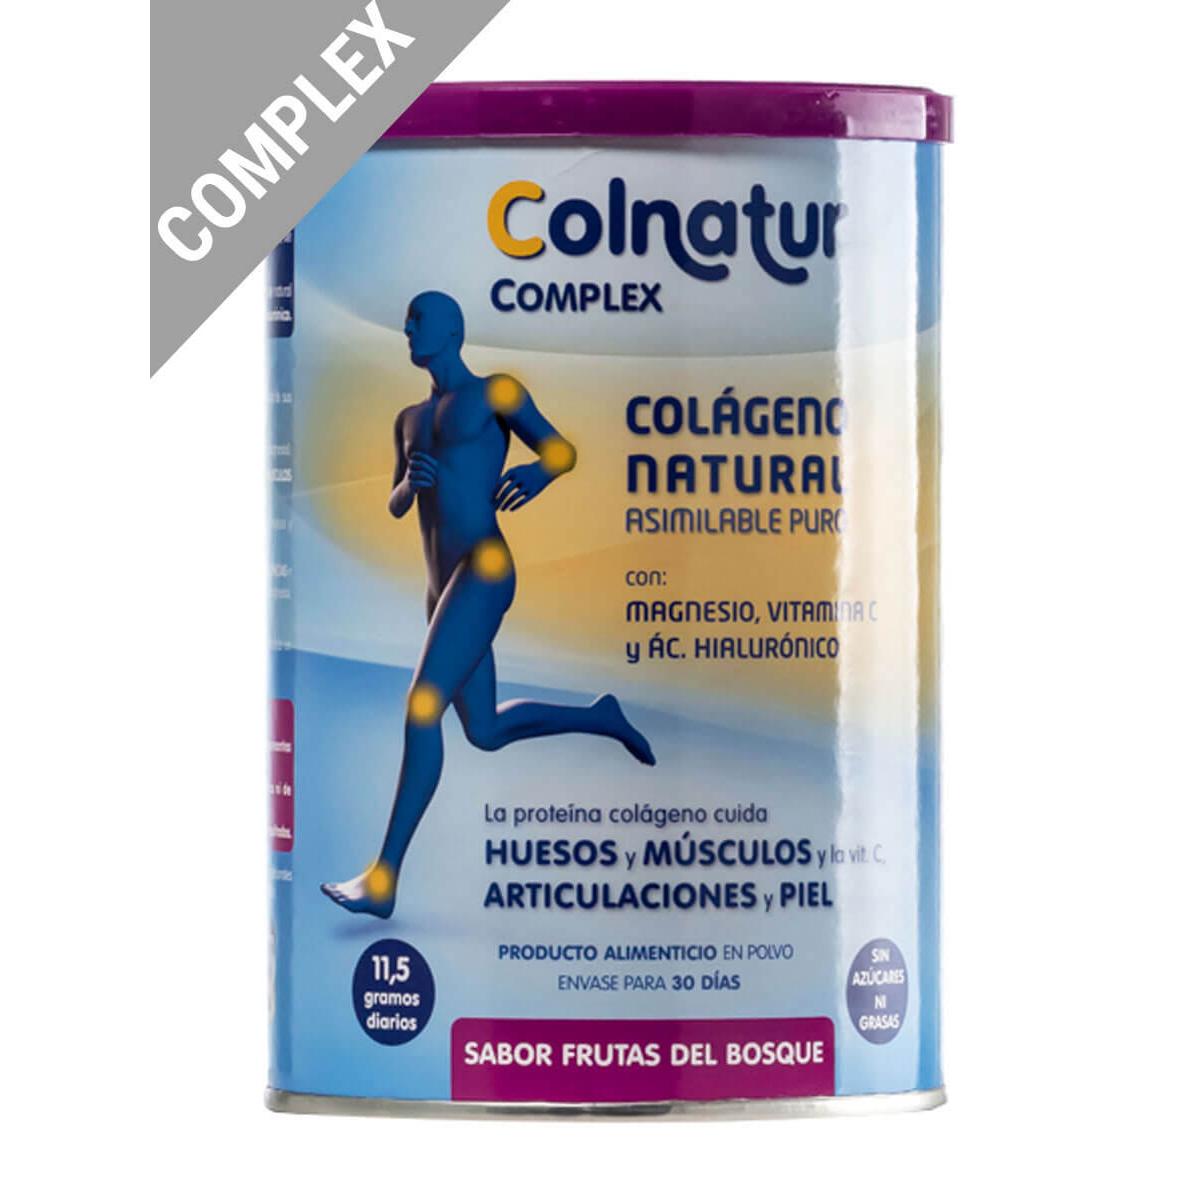 Colnatur - Colnatur® complex sabor frutas del bosque colágeno + magnesio 345g